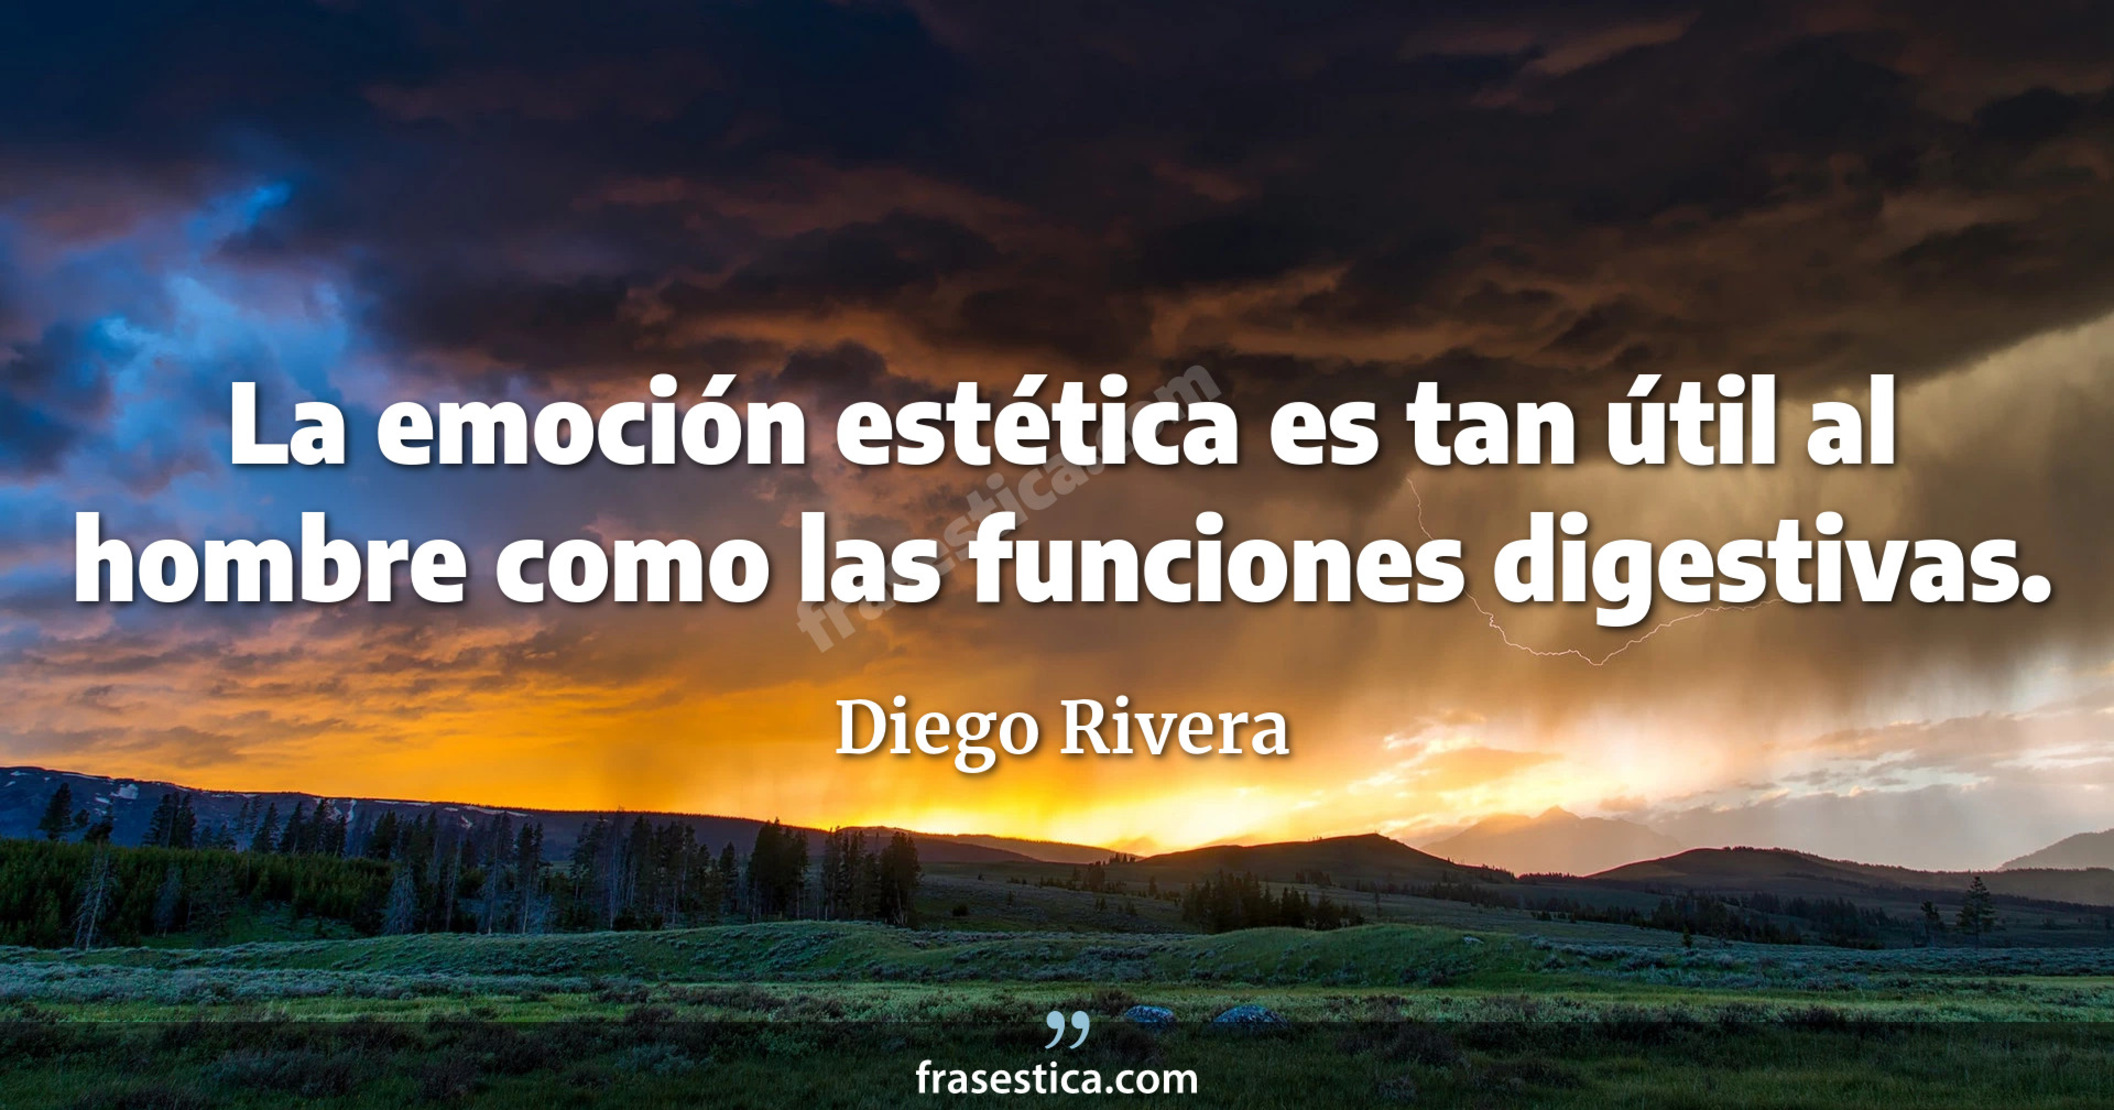 La emoción estética es tan útil al hombre como las funciones digestivas. - Diego Rivera